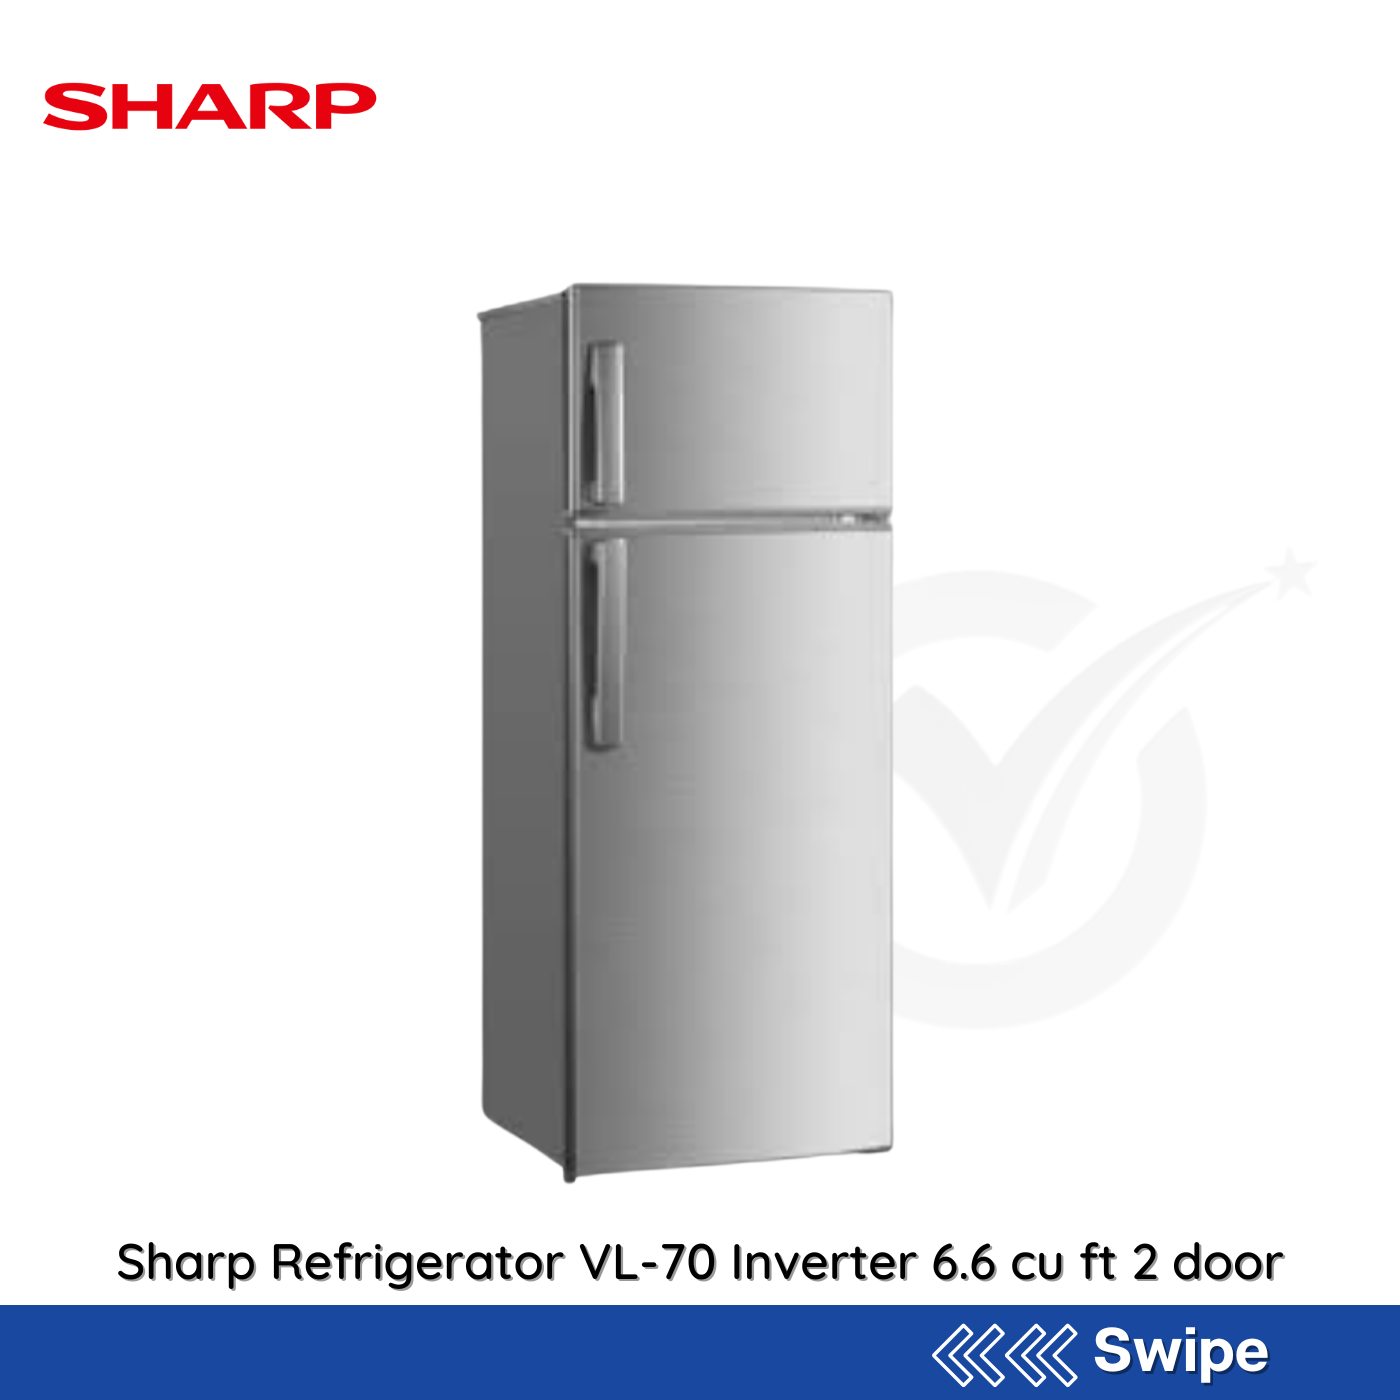 Sharp Refrigerator  VL-70 Inverter 6.6 cu ft 2 door